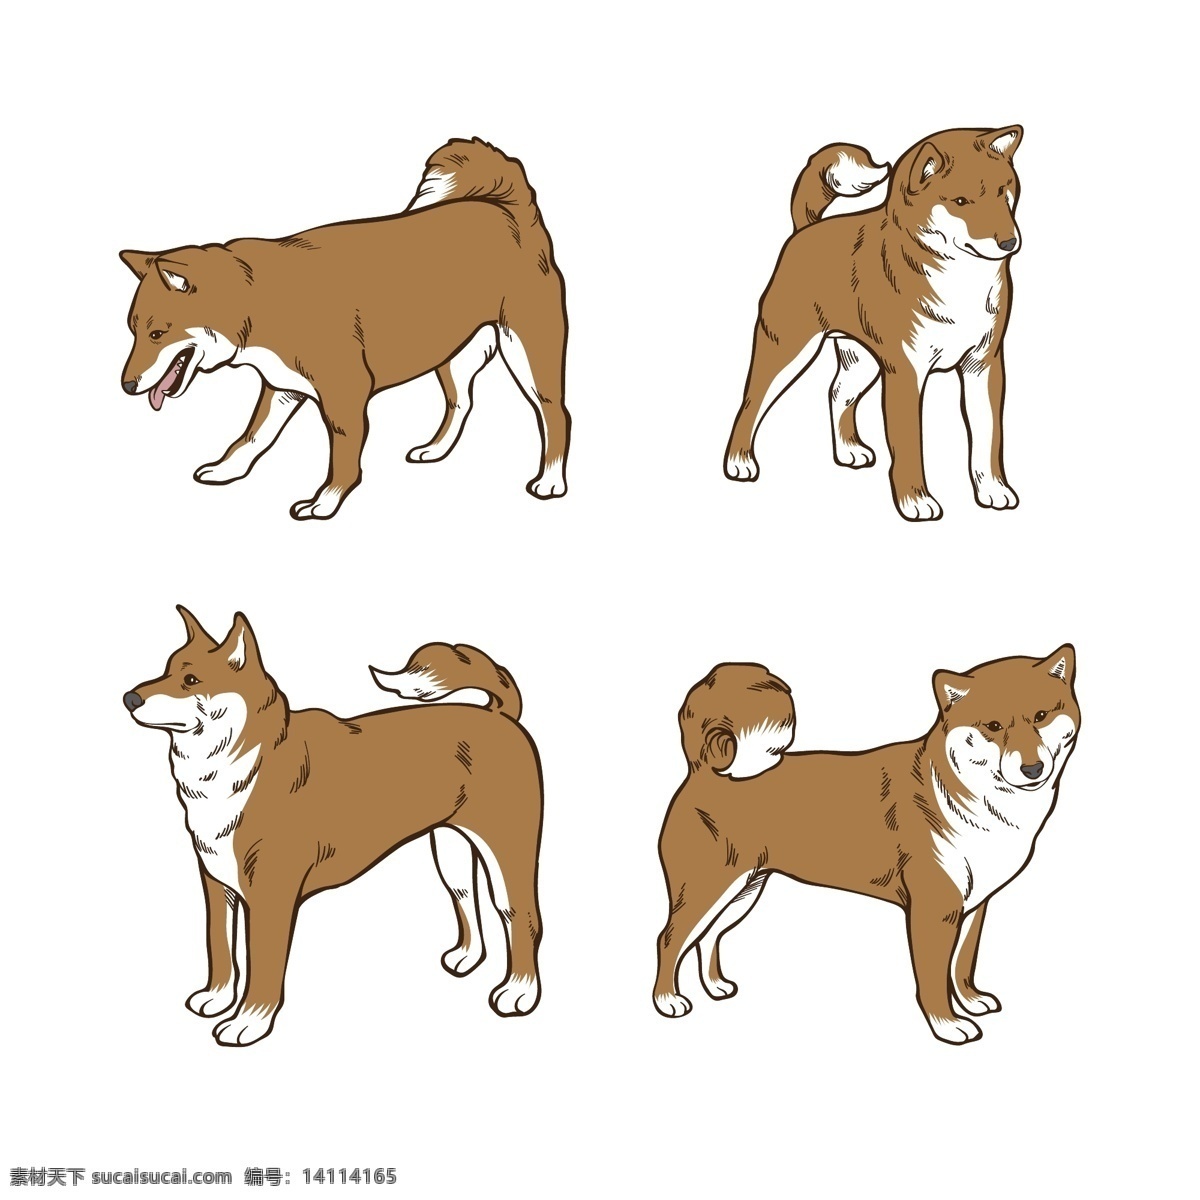 插画 柴犬 动物 搞笑 狗 卡通 卡通狗 可爱 可爱宠物 犬 手绘 四 种 姿势 大